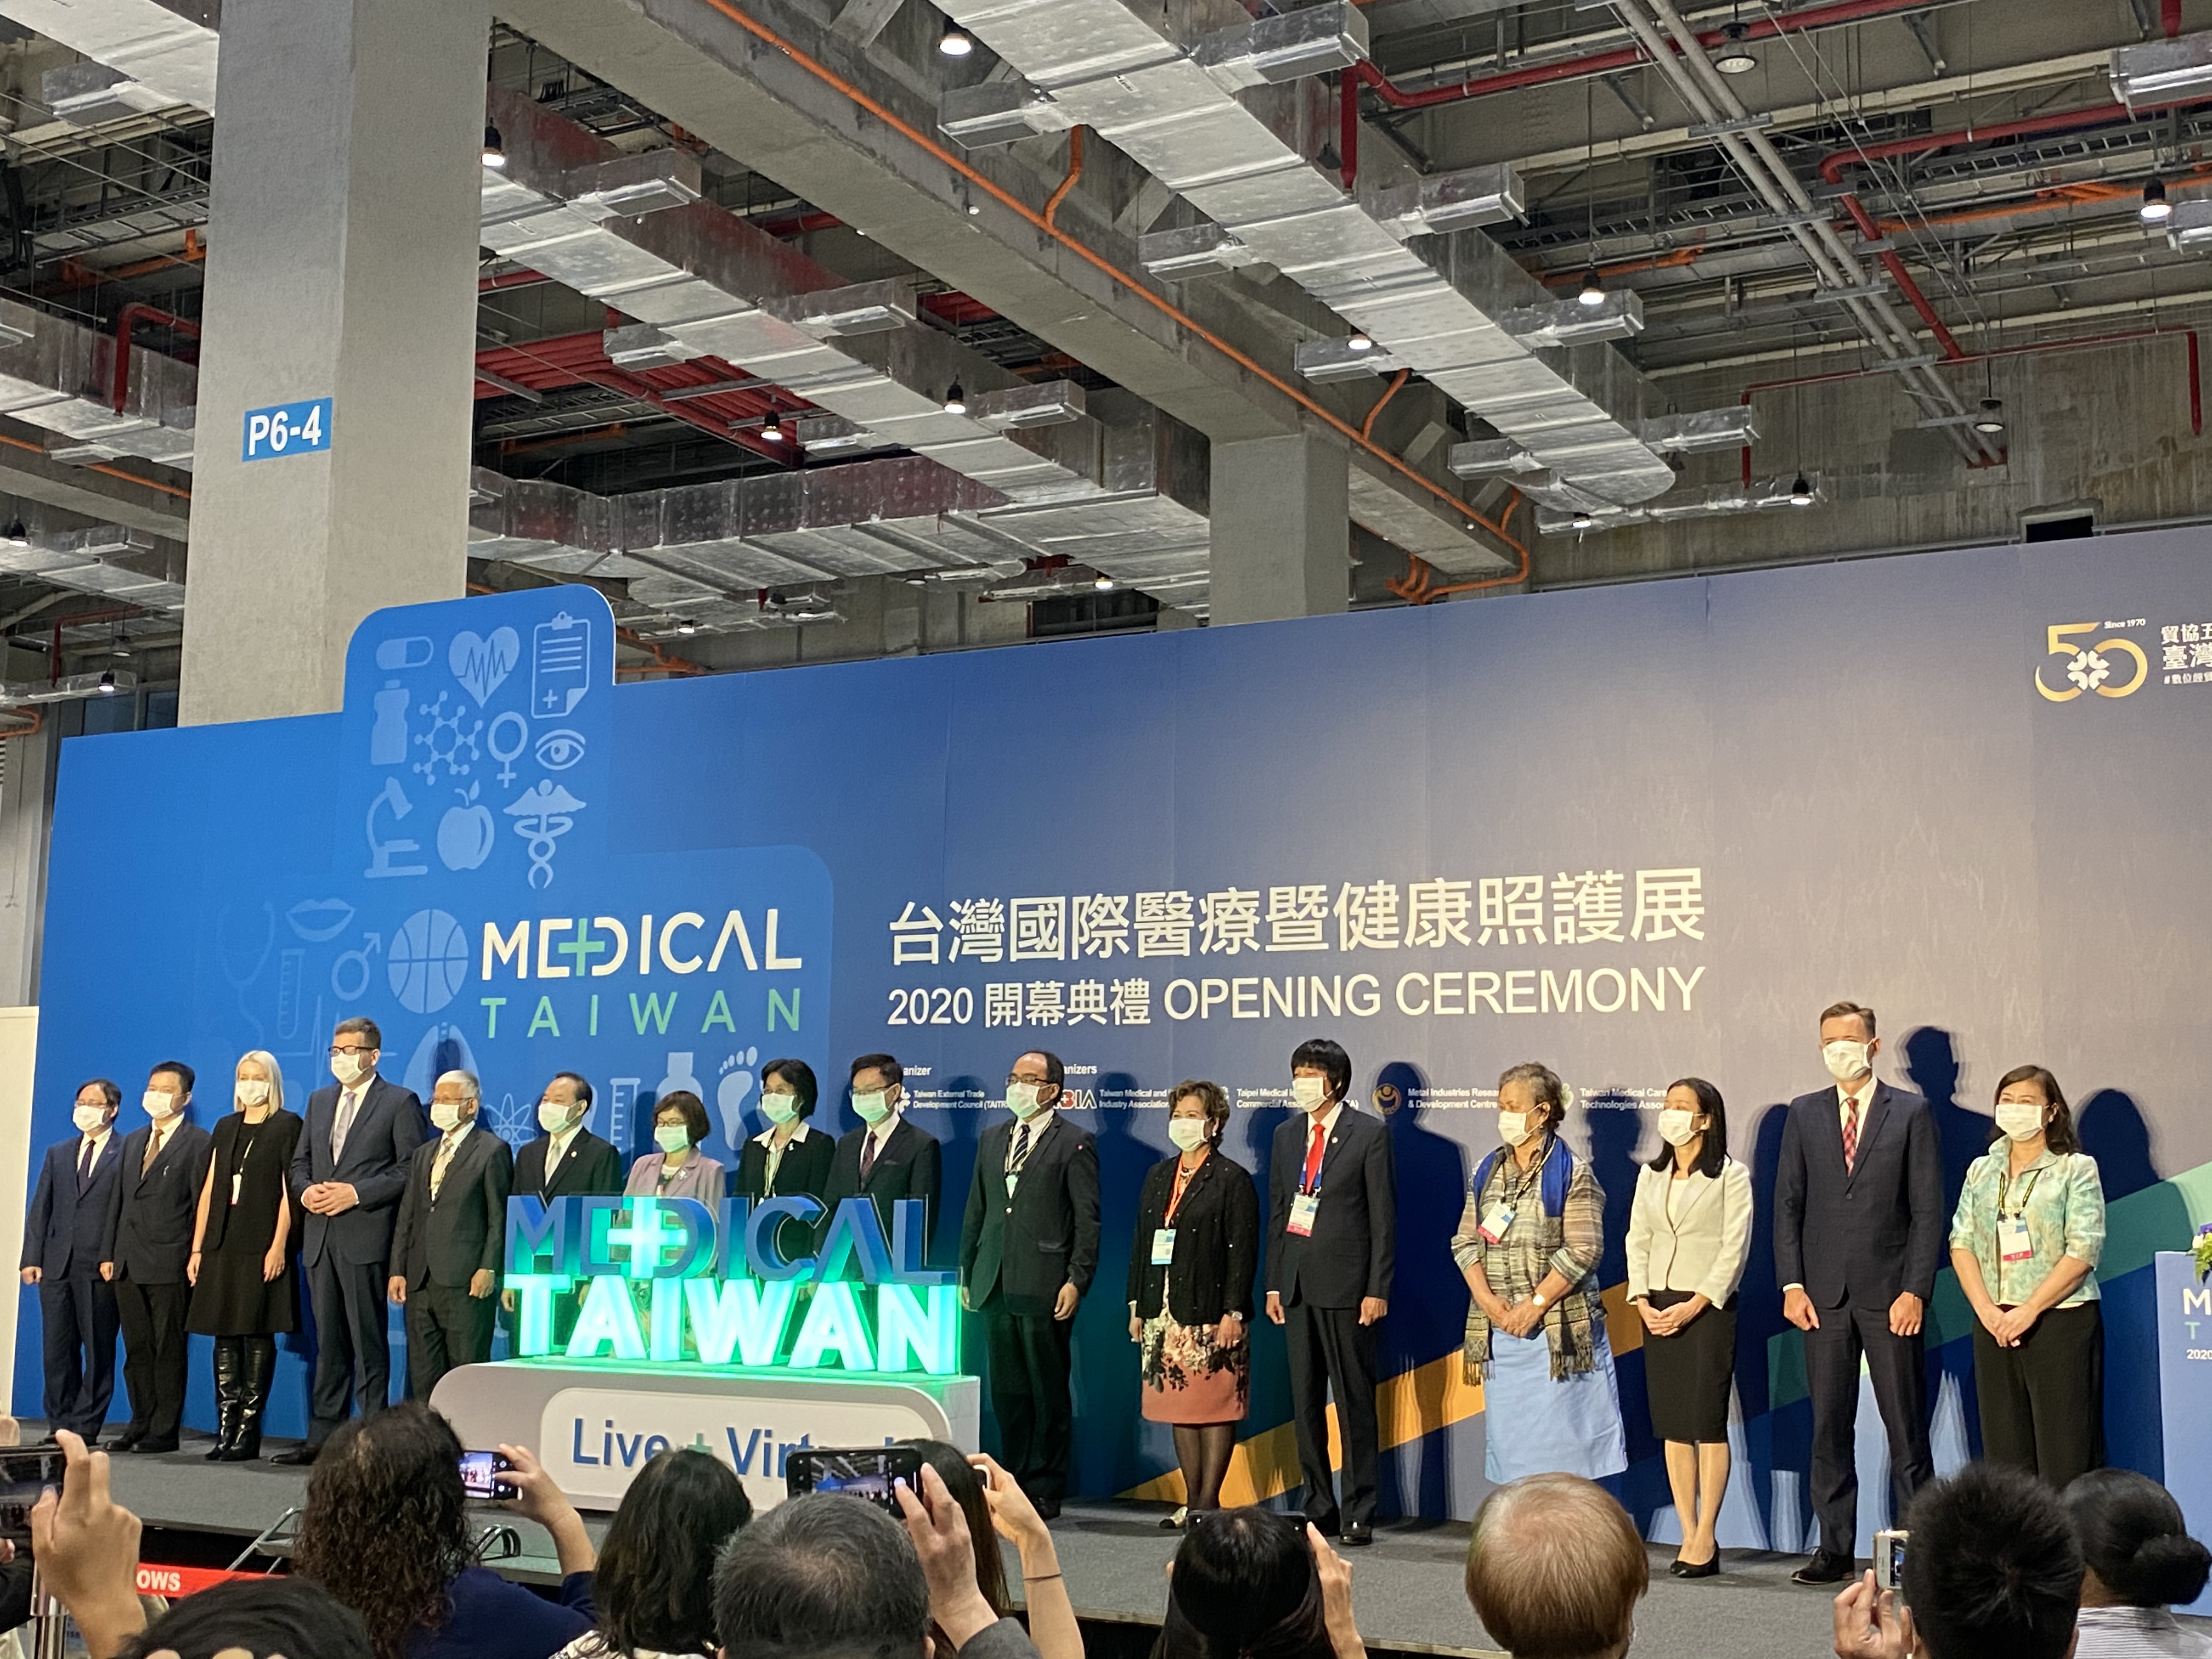 【展覽】2020 MEDICAL TAIWAN 台灣國際醫療健康照護展隆重開幕